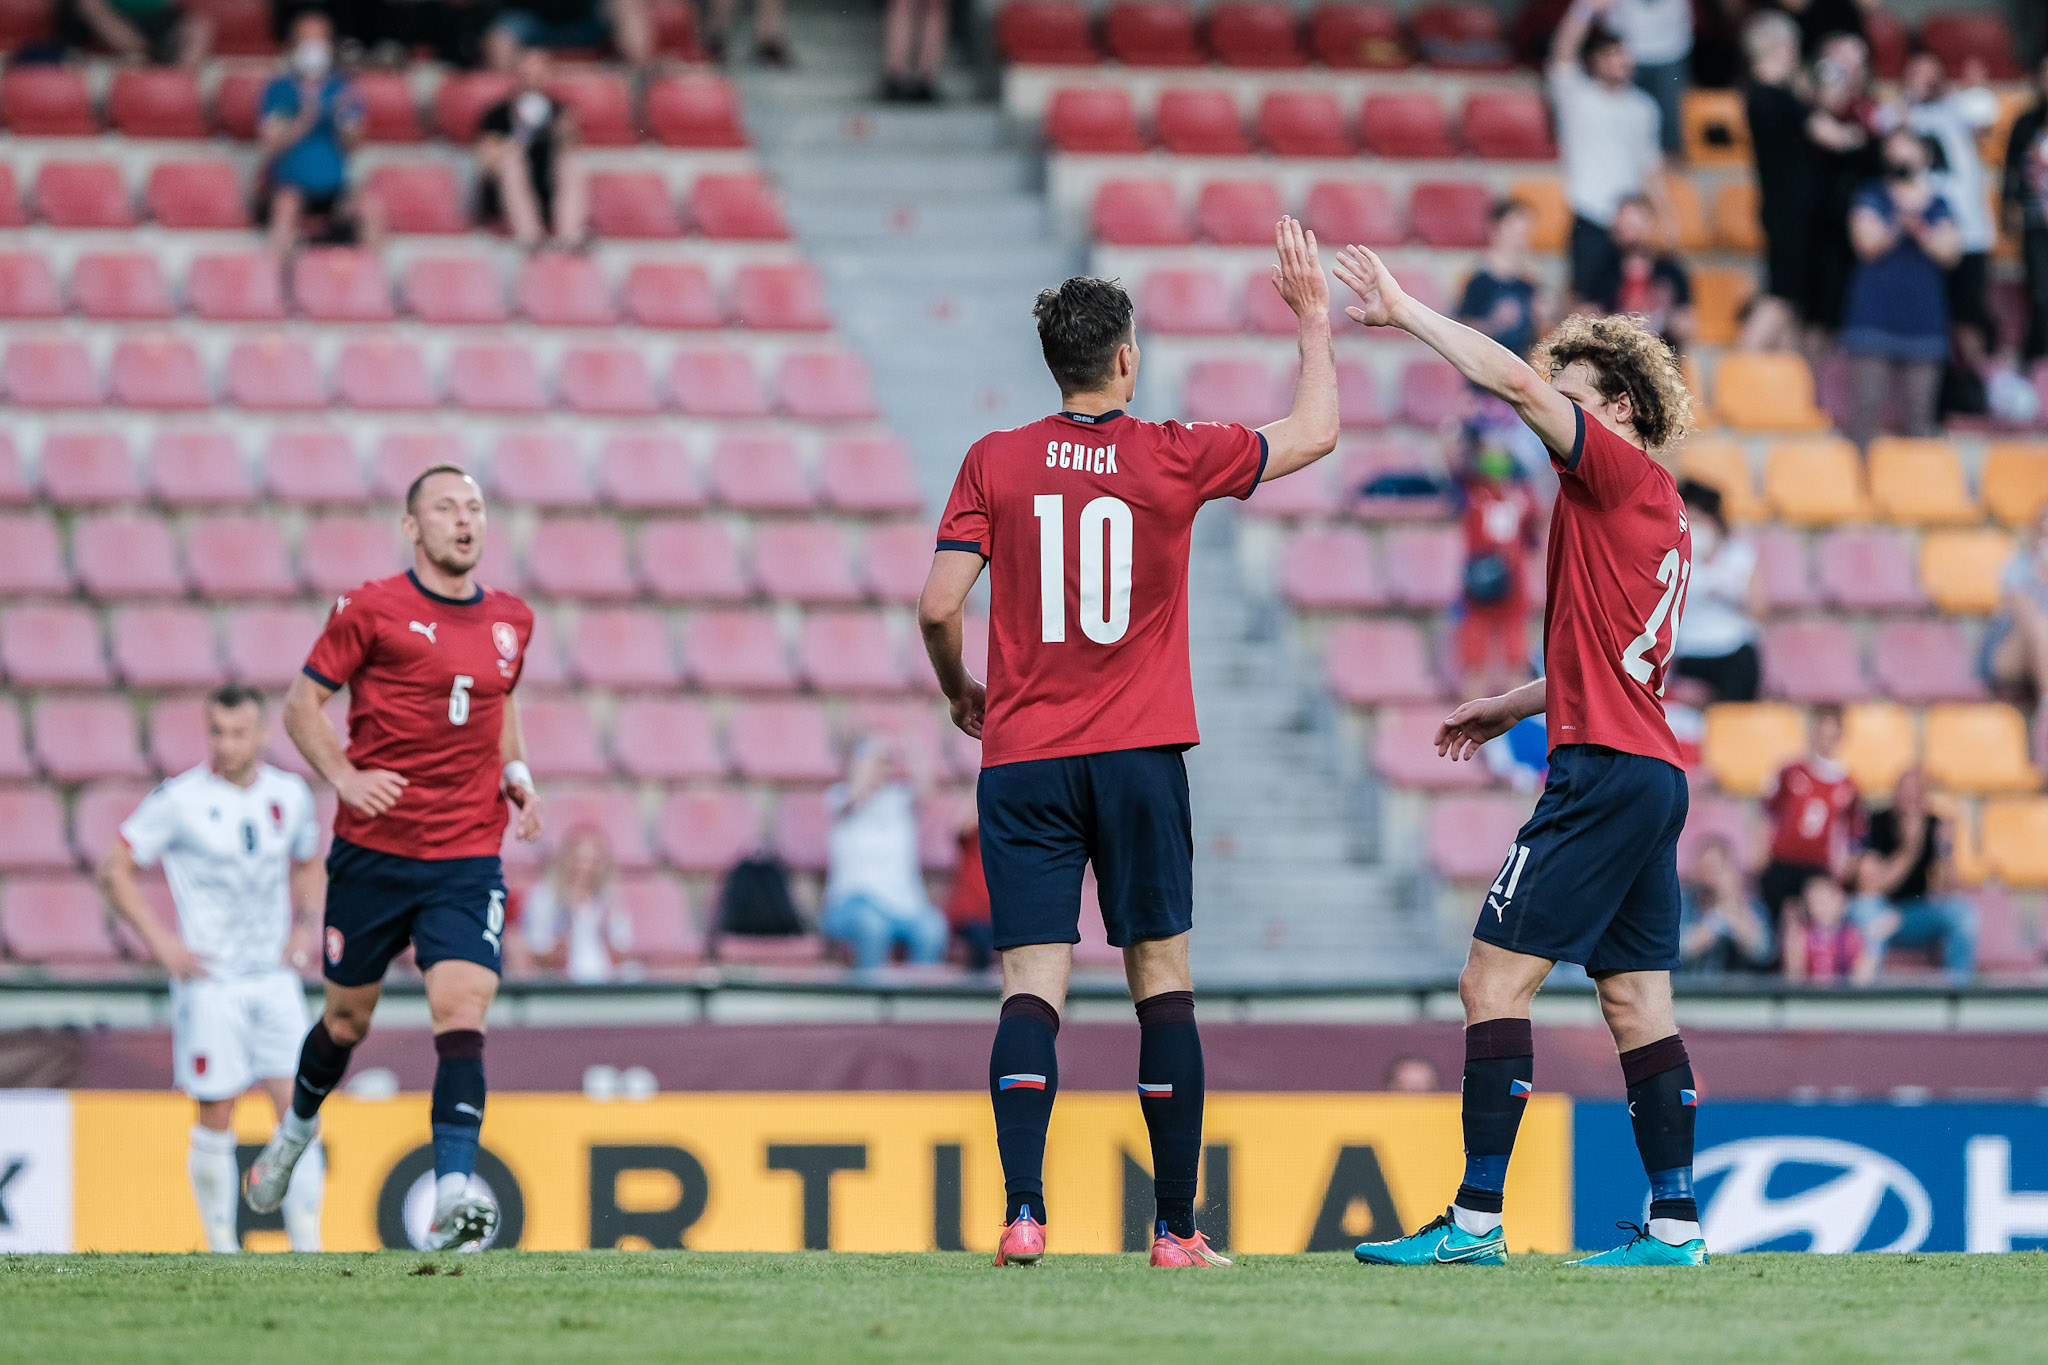 Shqipëria humb ndeshjen miqësore me Çekinë